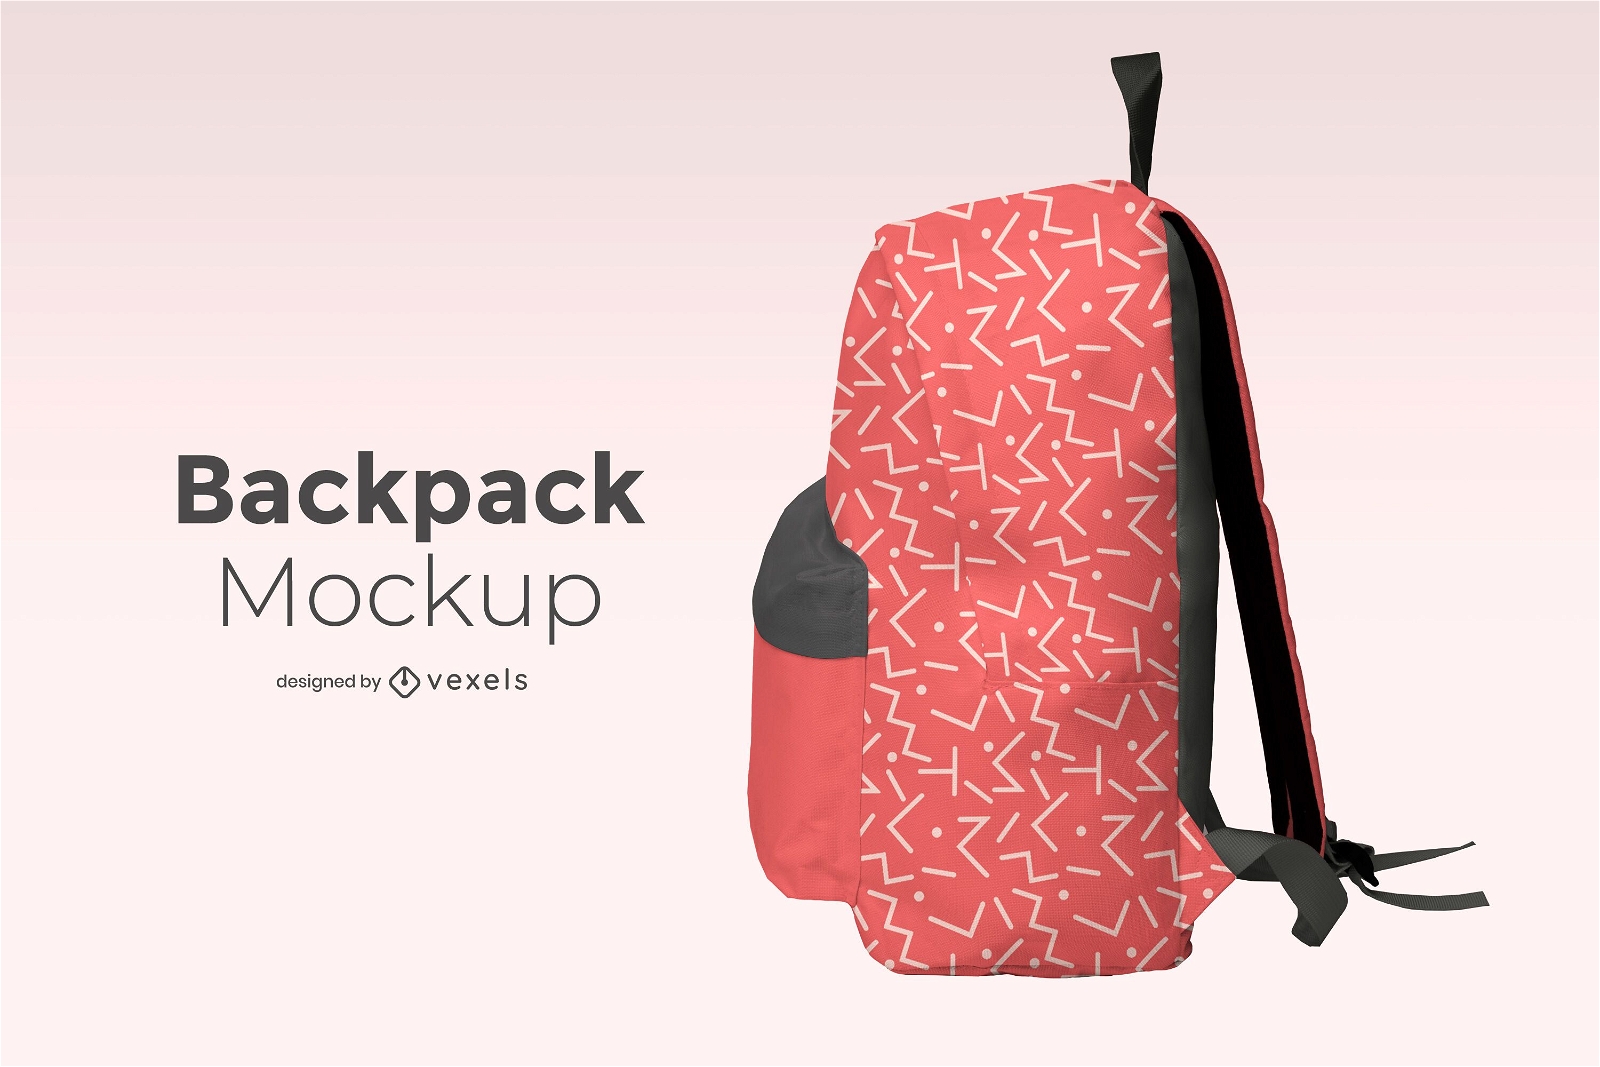 Backpack side mockup design